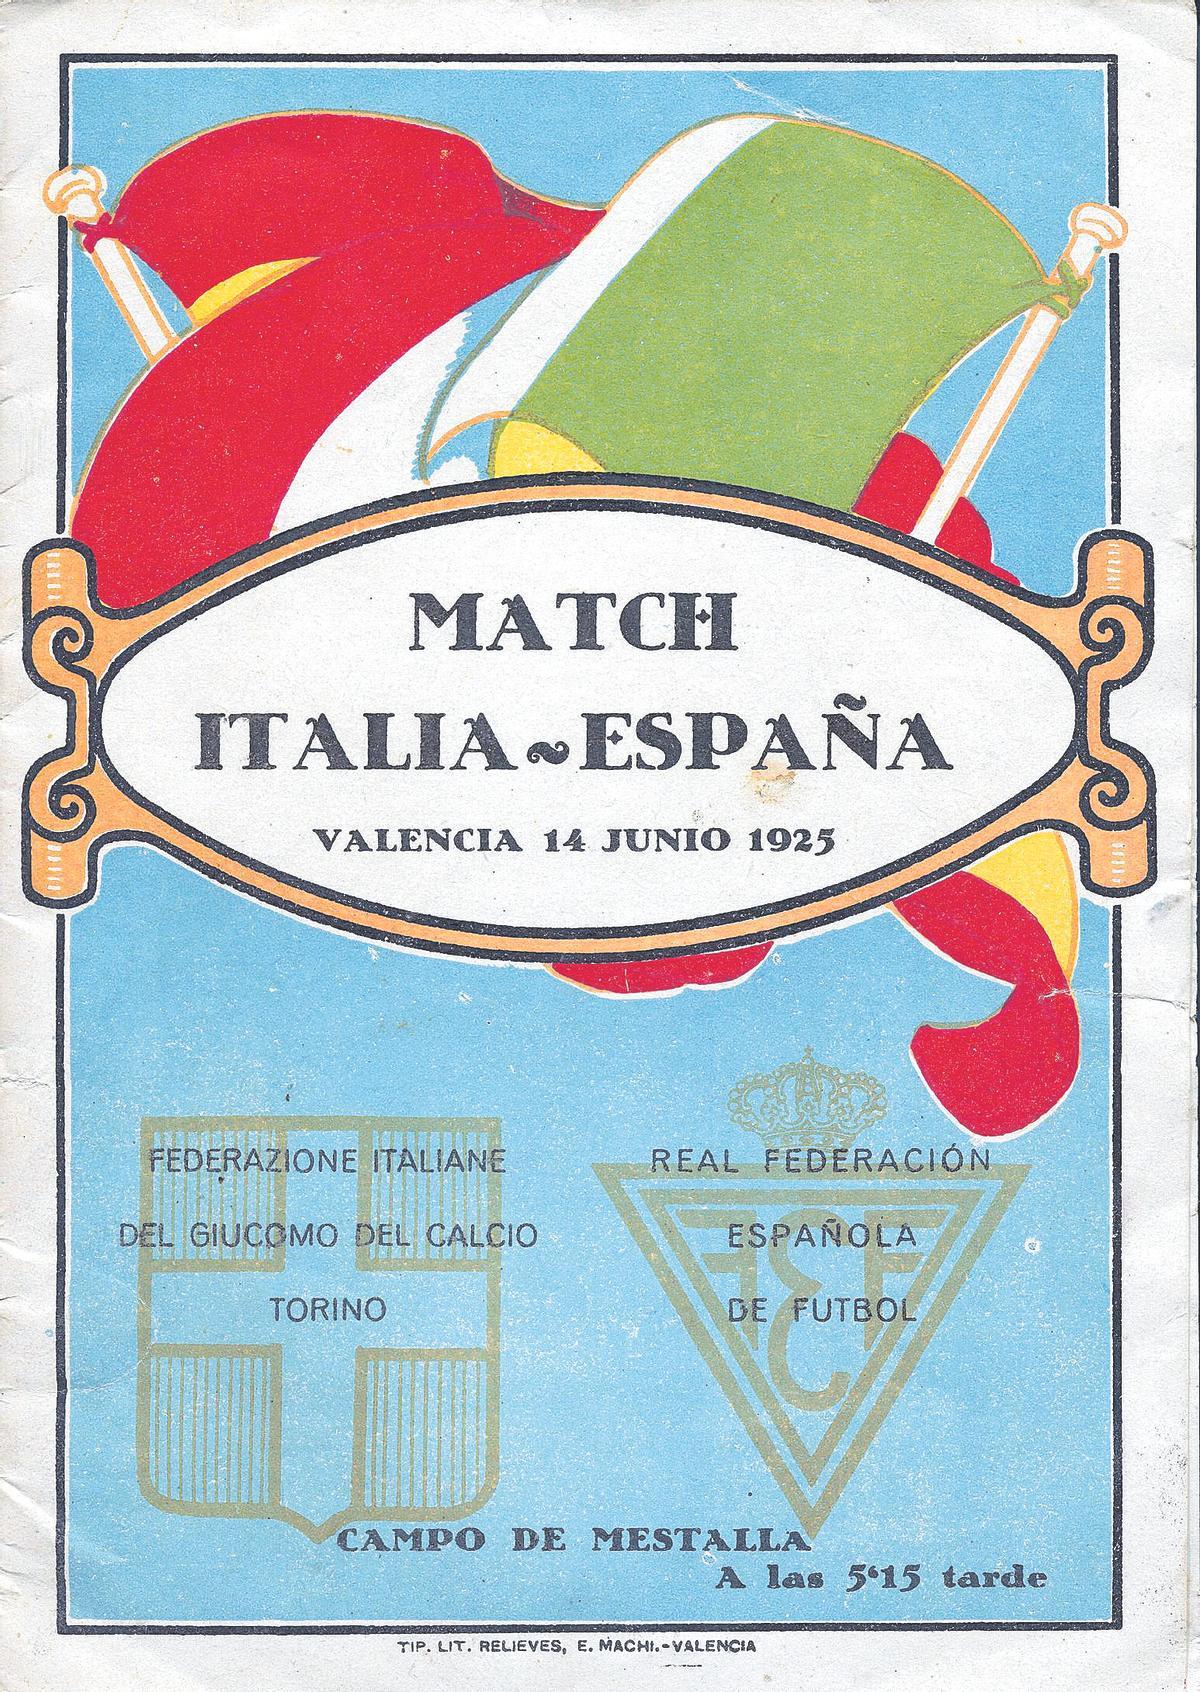 El amistoso entre España e Italia, la primera gran cita de relieve del joven estadio valencianista